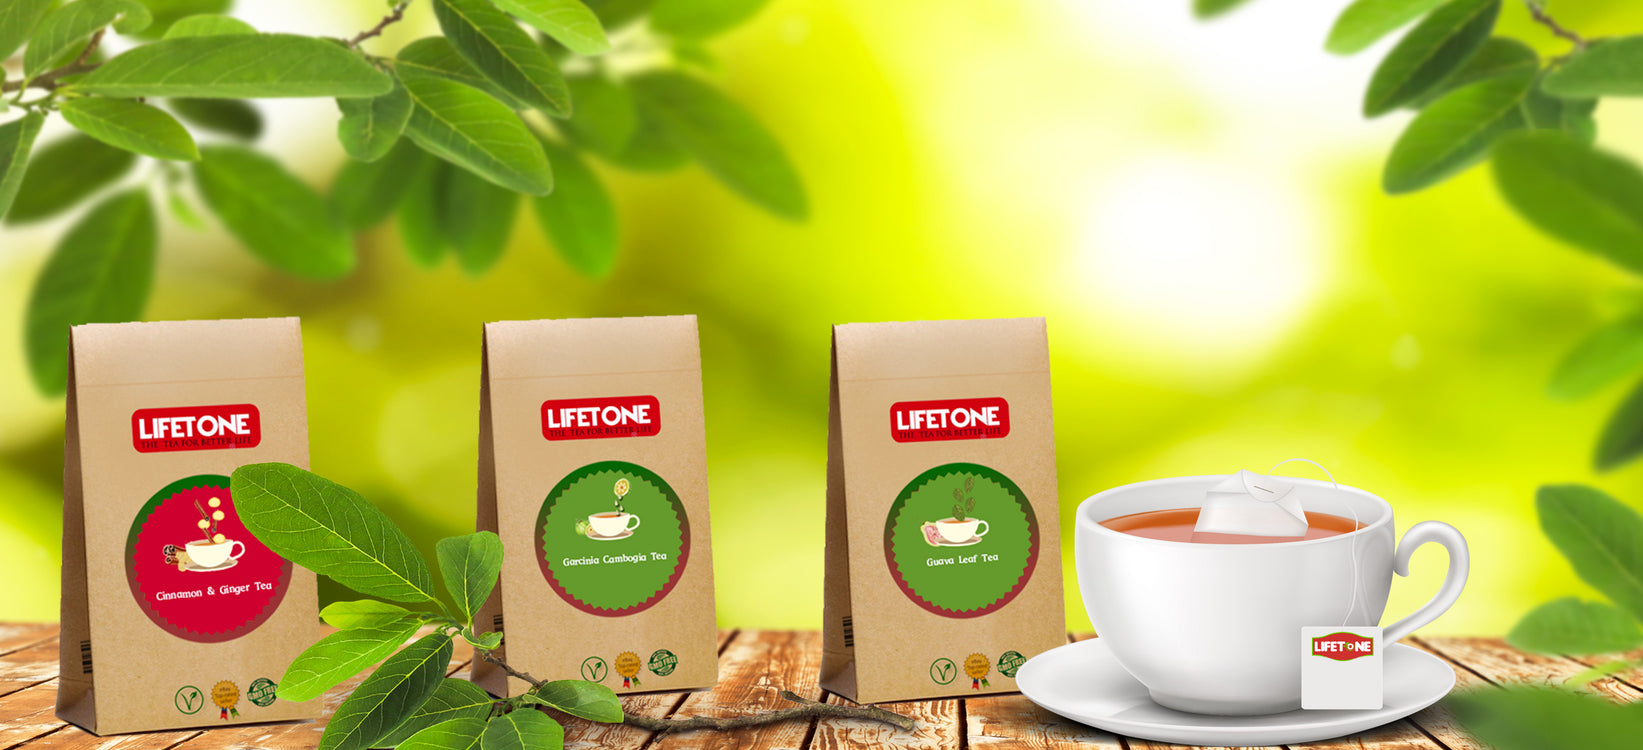 Lifetone Nature's Tea 